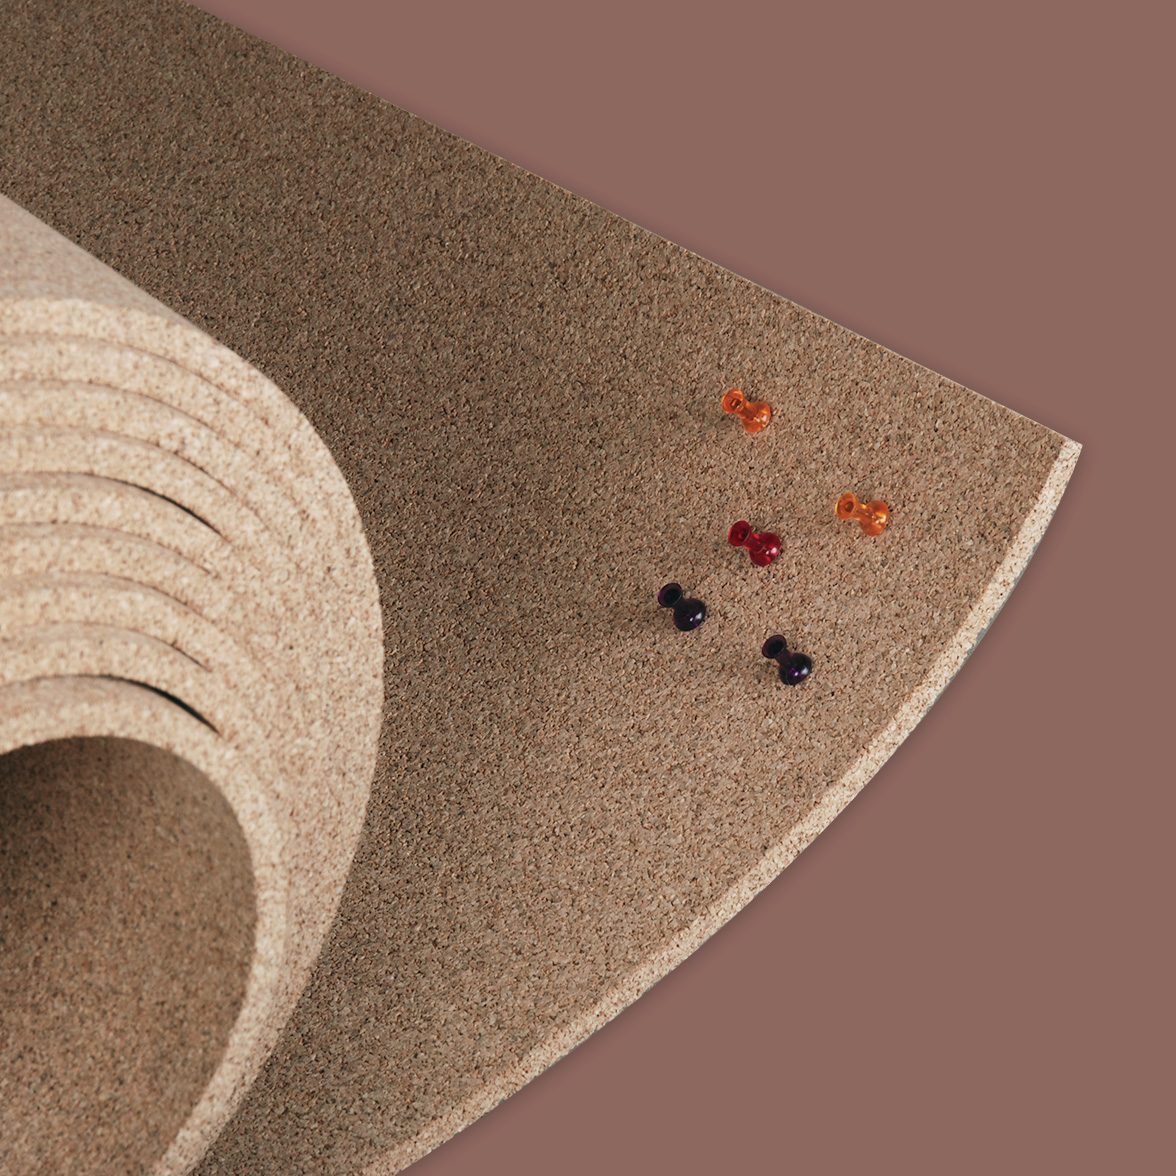 Manton Cork Roll - 4' x 8' x 1/2 - Premium Facing Grade Material - 100%  Natural